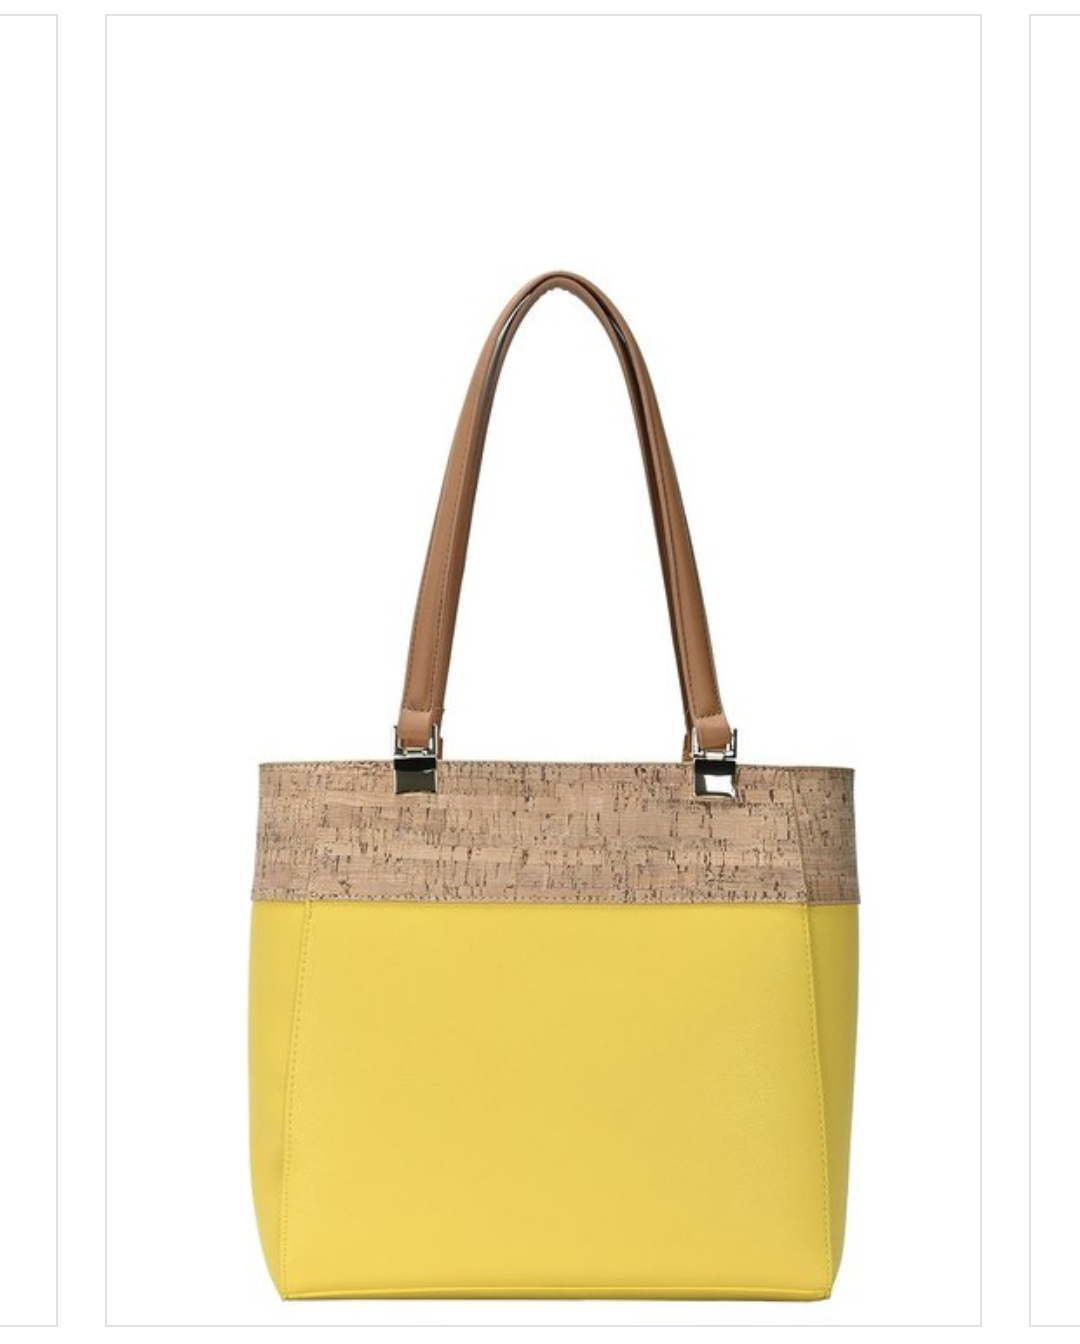 Tone Tote Bag Fashion Handbags